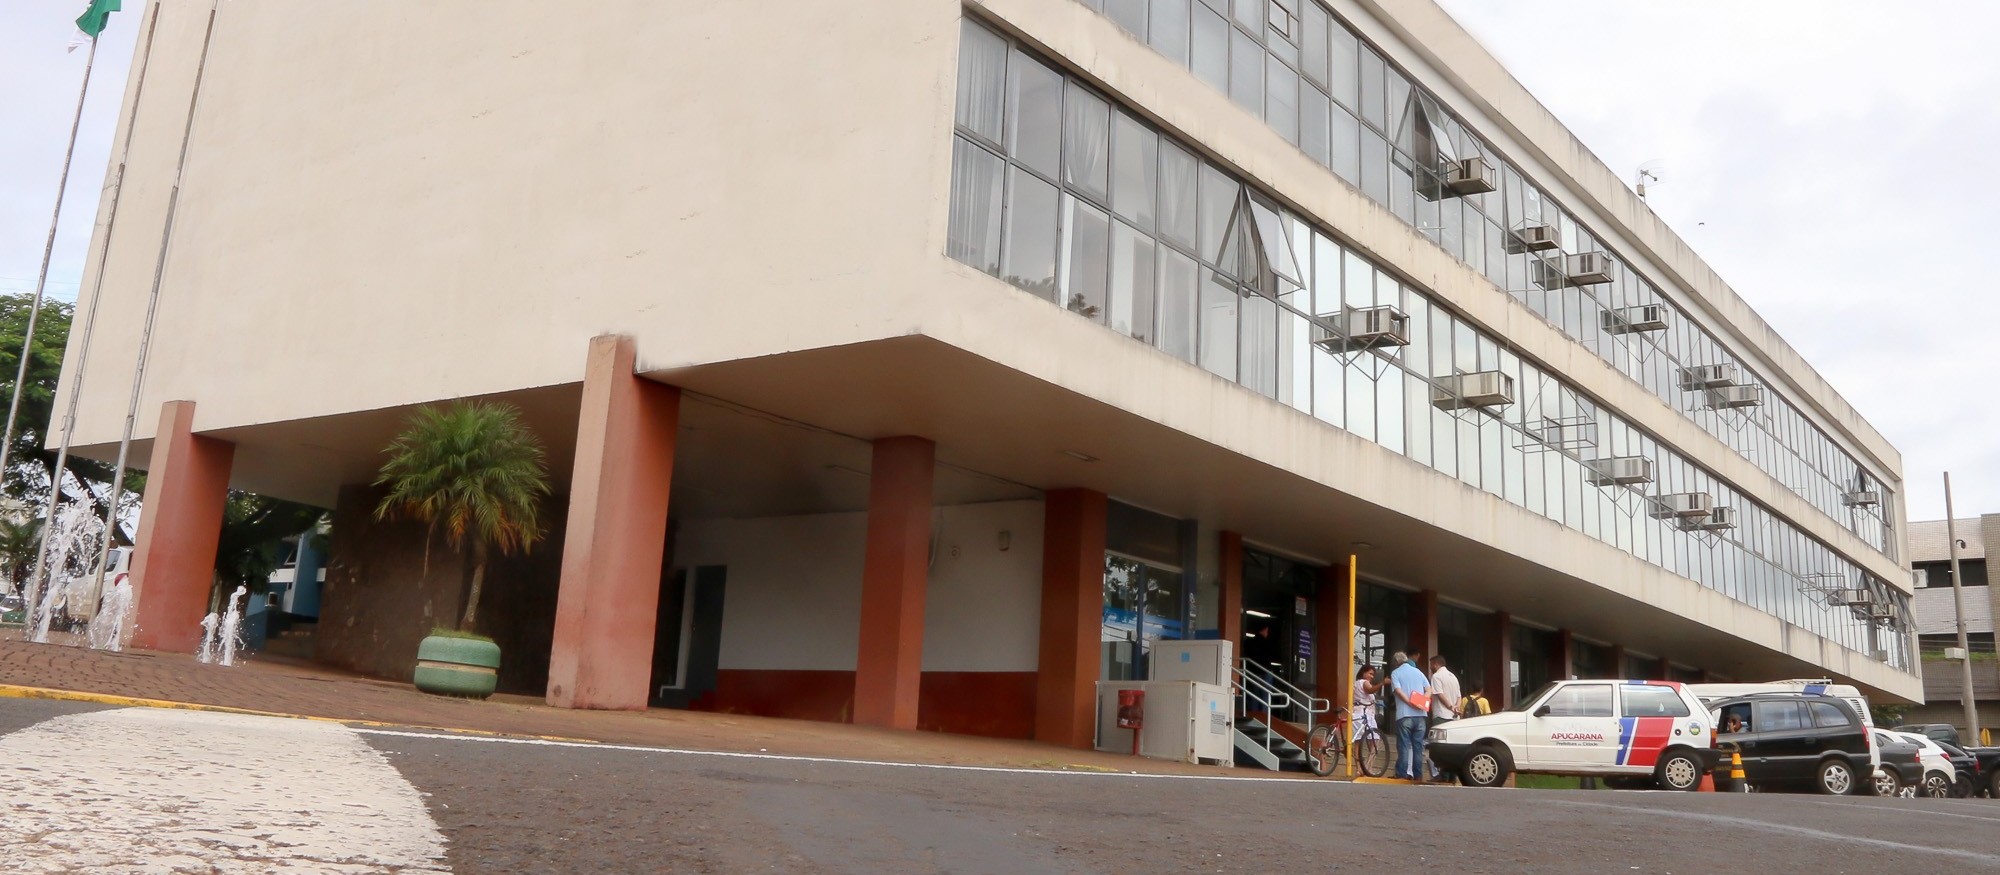 Prefeitura de Apucarana estará fechada para higienização nessa sexta-feira (1º)